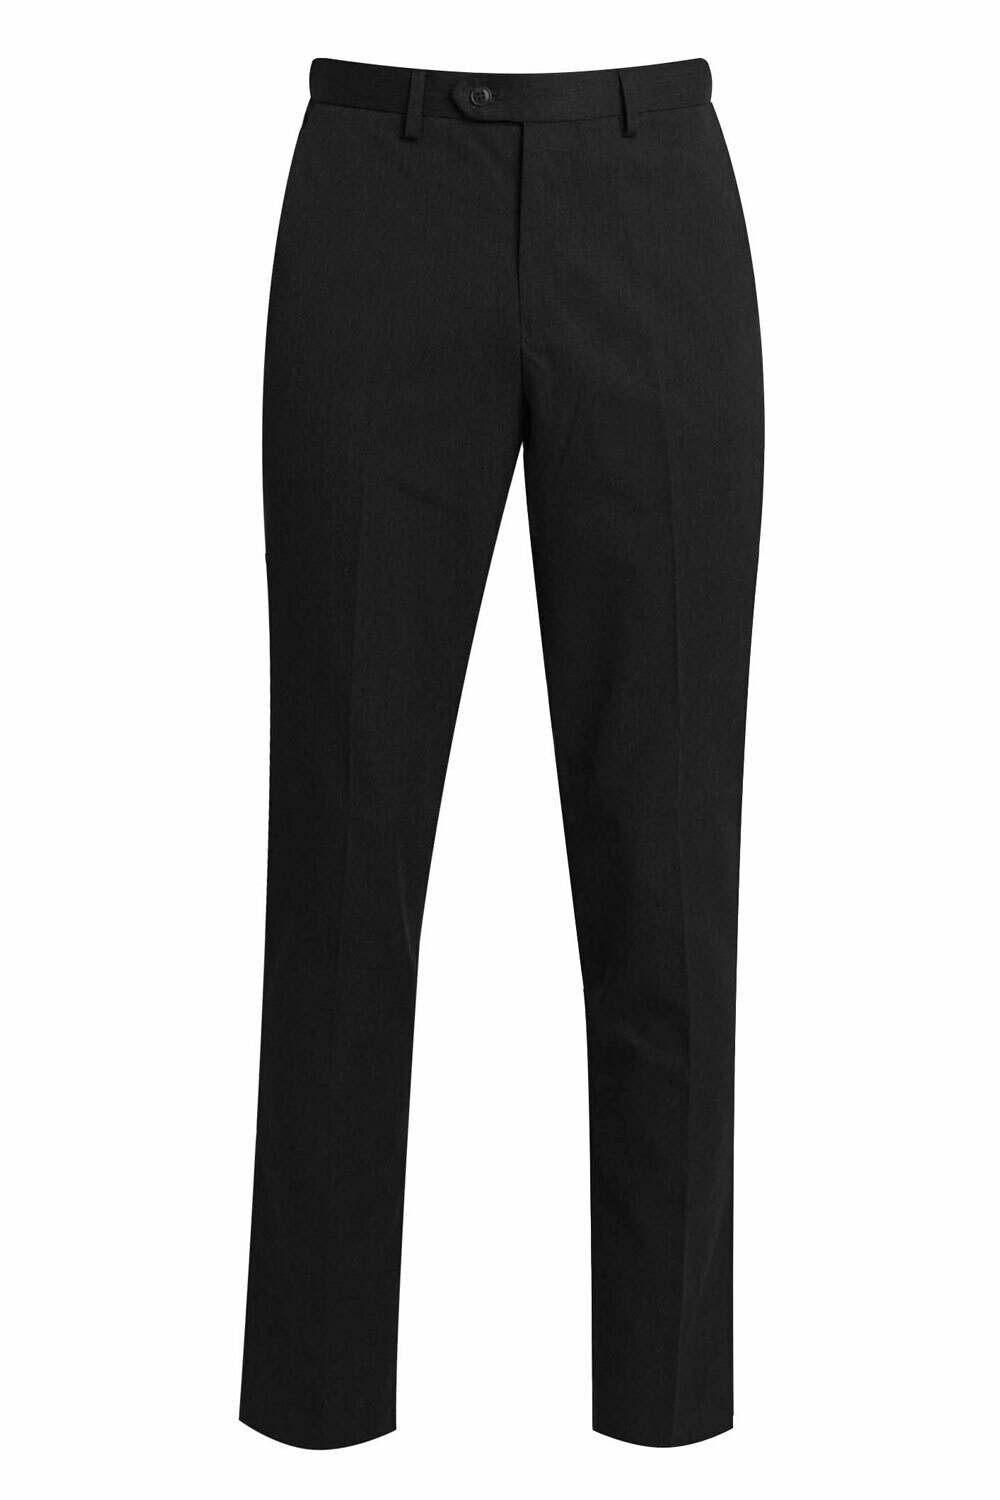 Senior School Slim Fit Boys Trouser (From Age 8-9 to Waist 40') (3 leg length options) 'Best Seller'